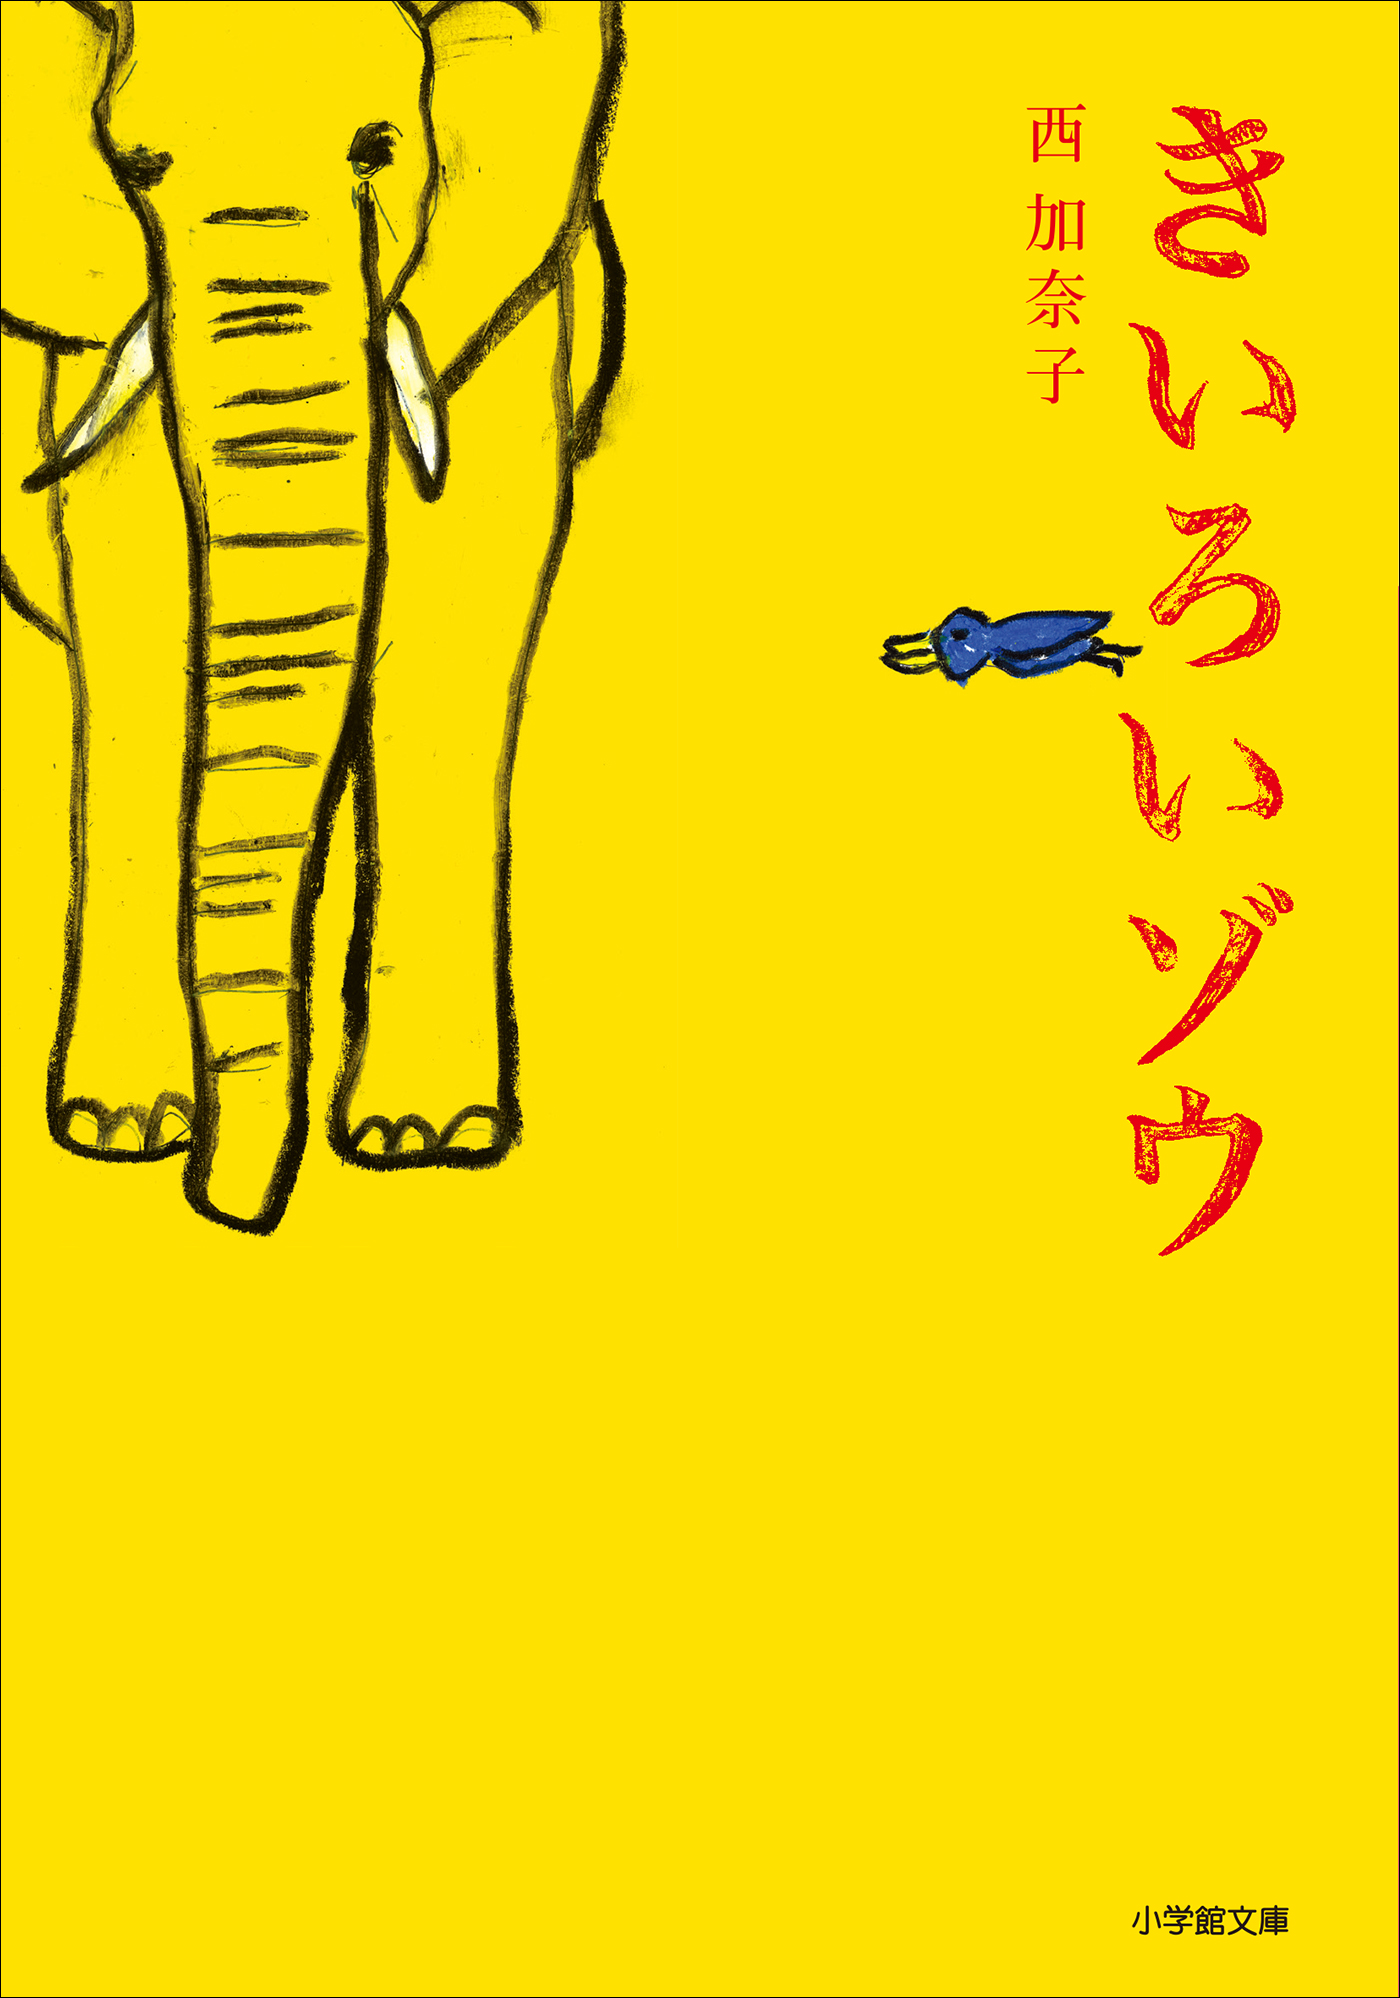 幸せを呼ぶ黄色い象 - インテリア小物